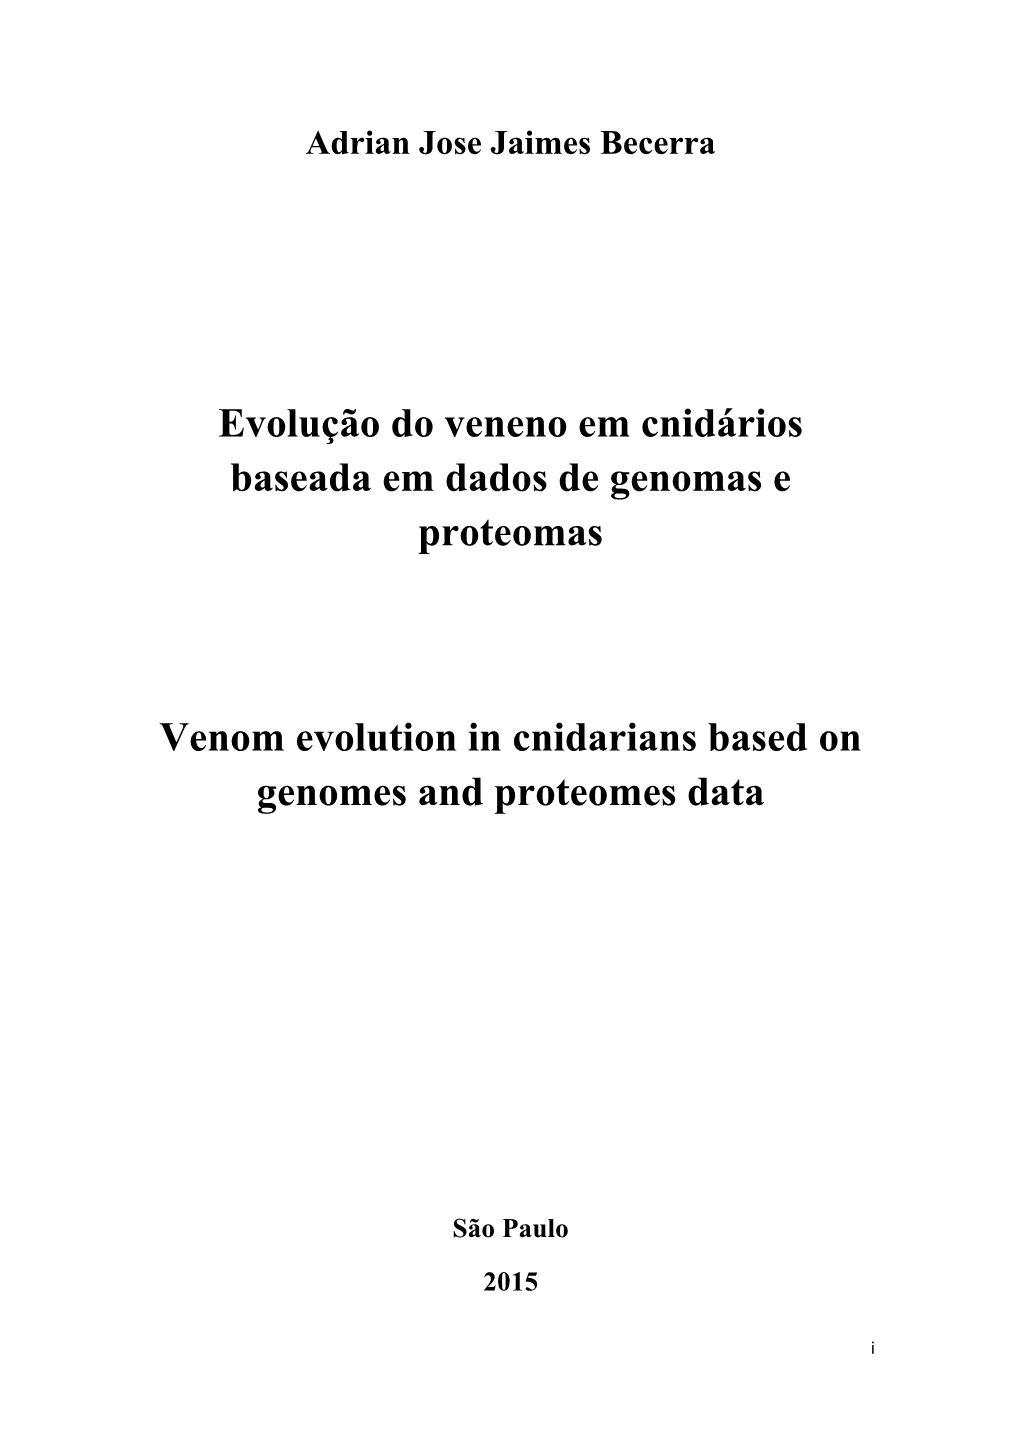 Evolução Do Veneno Em Cnidários Baseada Em Dados De Genomas E Proteomas